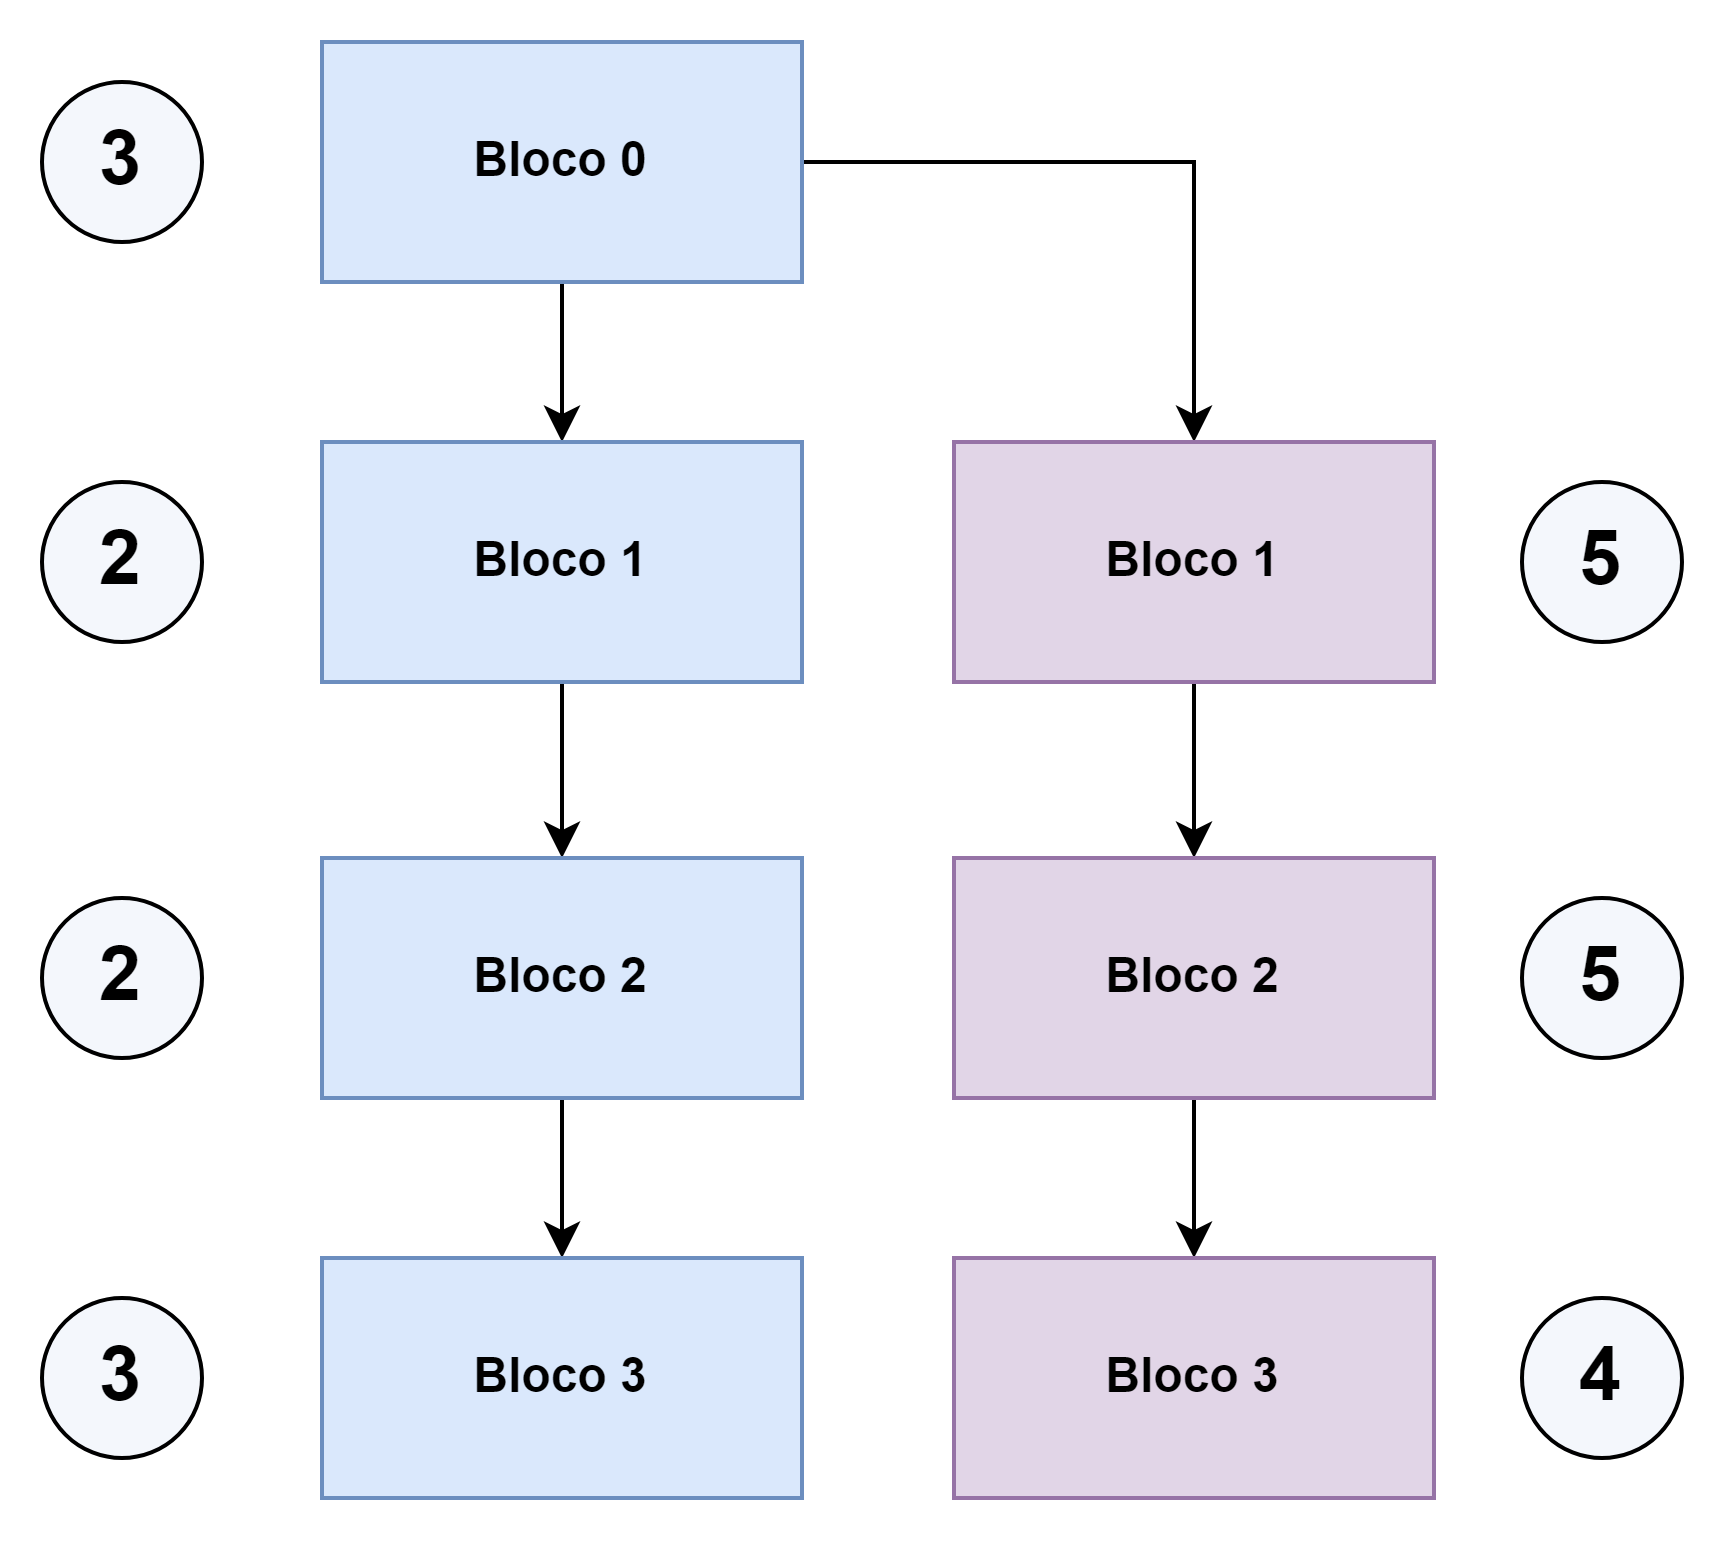 A imagem representa uma sequência de blocos de 0 até 3 com o número do nó vencedor ao seu lado esquerdo (3, 2, 2, 3). Ao lado dessa sequência, derivado do bloco 0 há outra sequência de outra cor, que vai do bloco 1 ao bloco 3, com o nó vencedor ao lado (5, 5, 4).